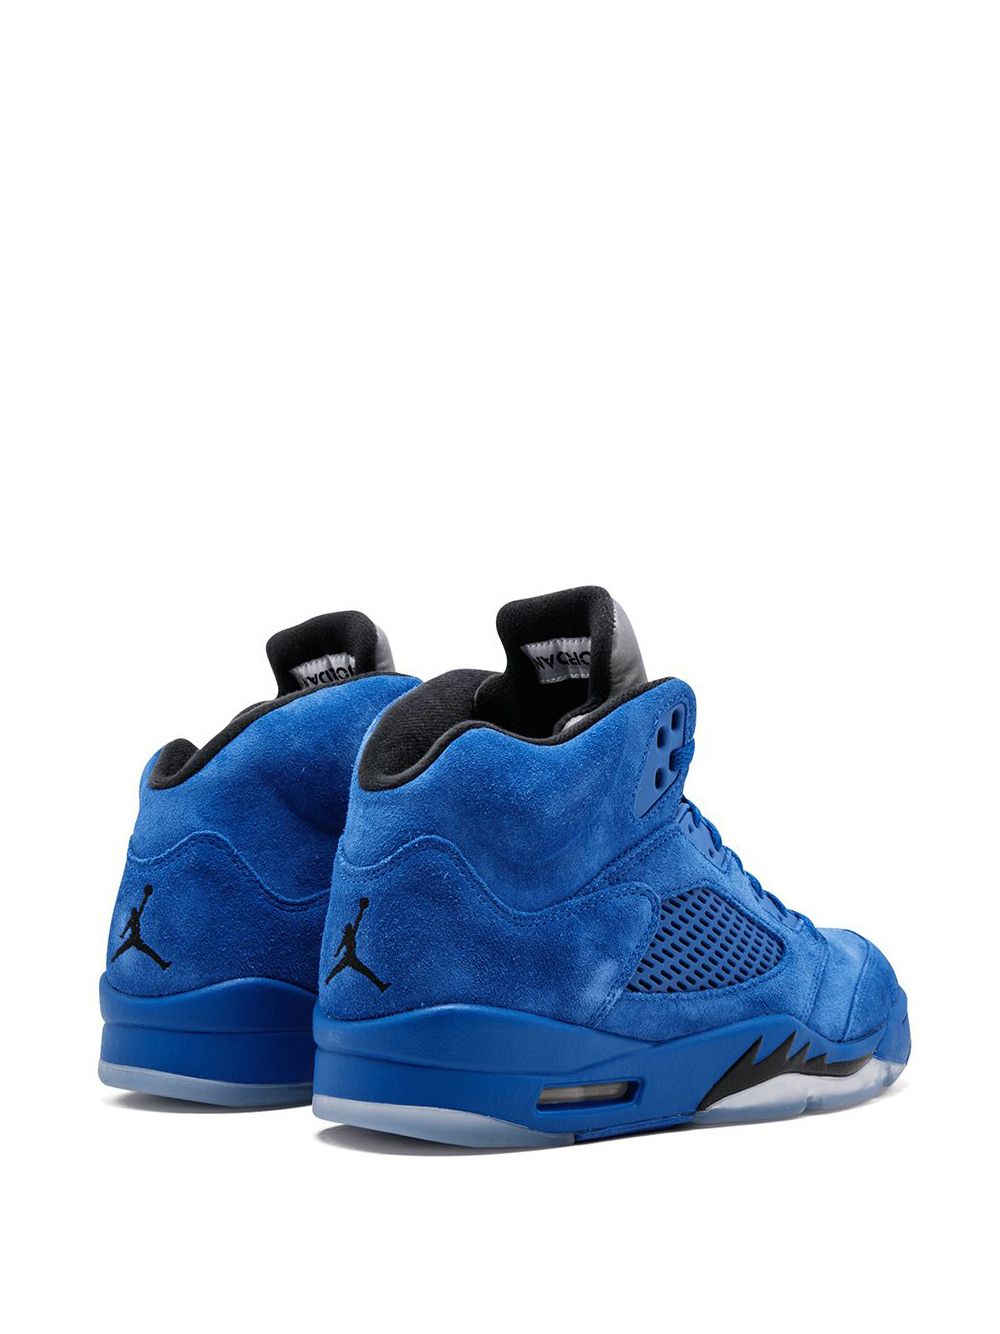 Jordan Air Jordan 5 Retro "Blue Suede" sneakers